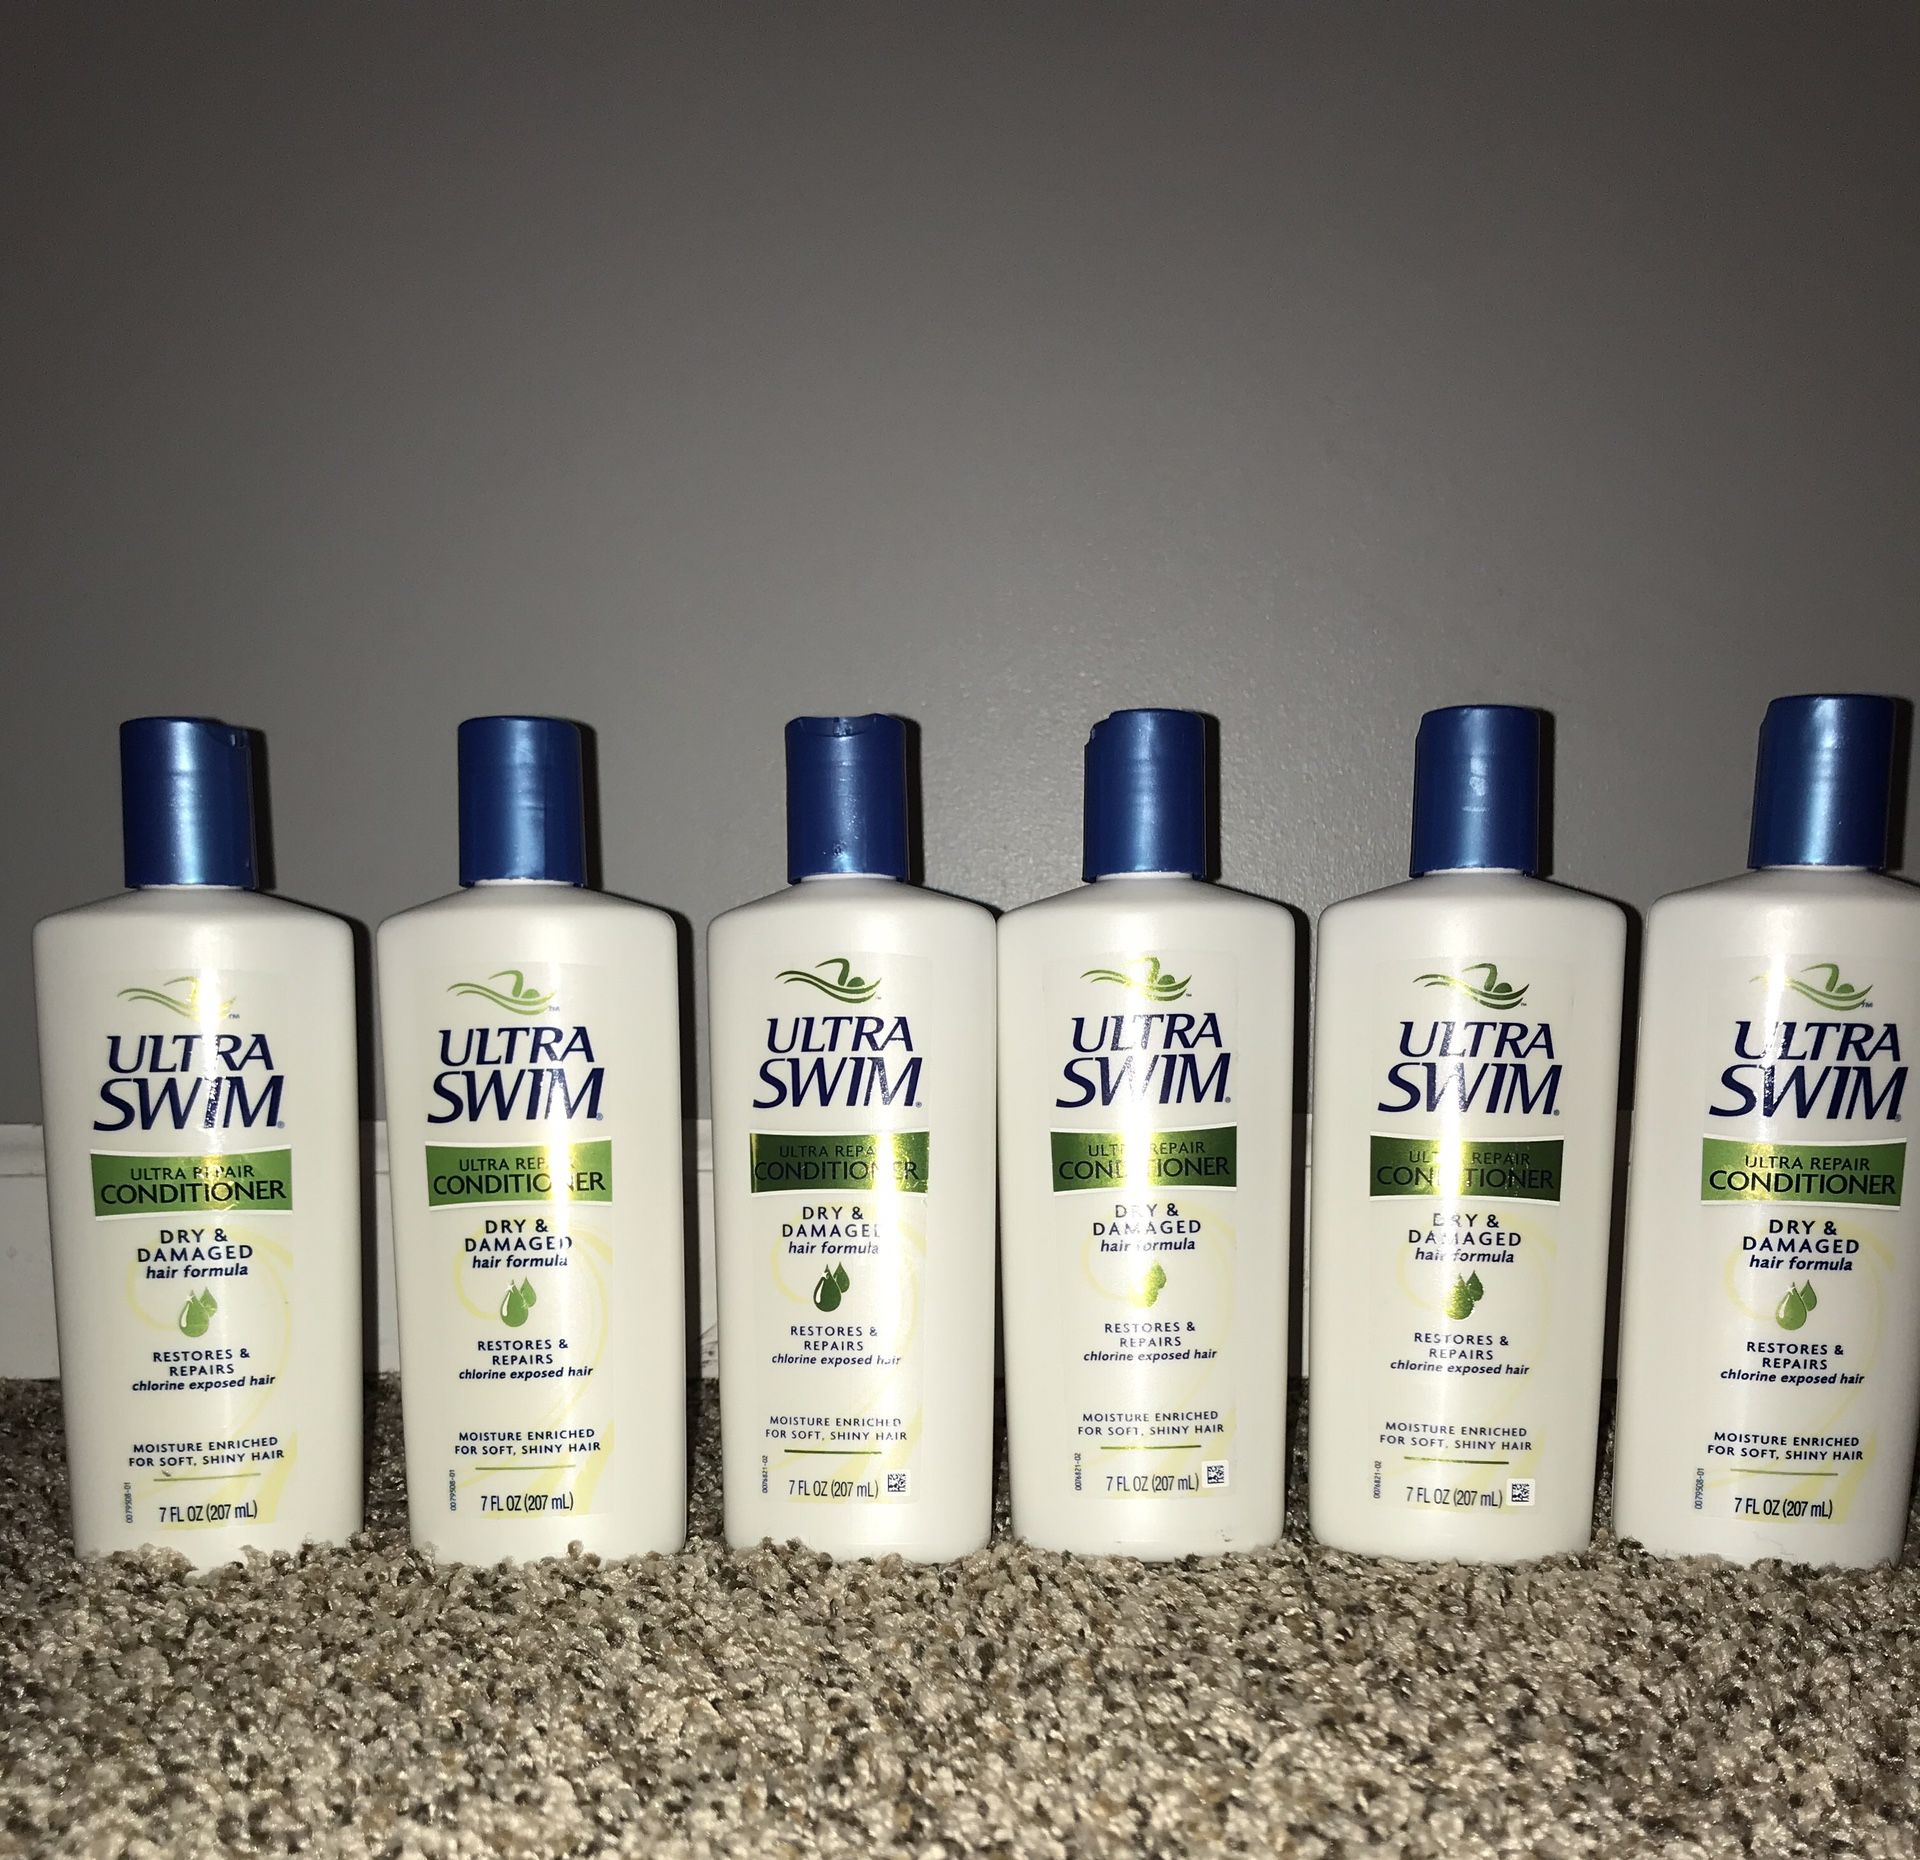 6 ULTRA SWIM Repair Conditioner Bottles